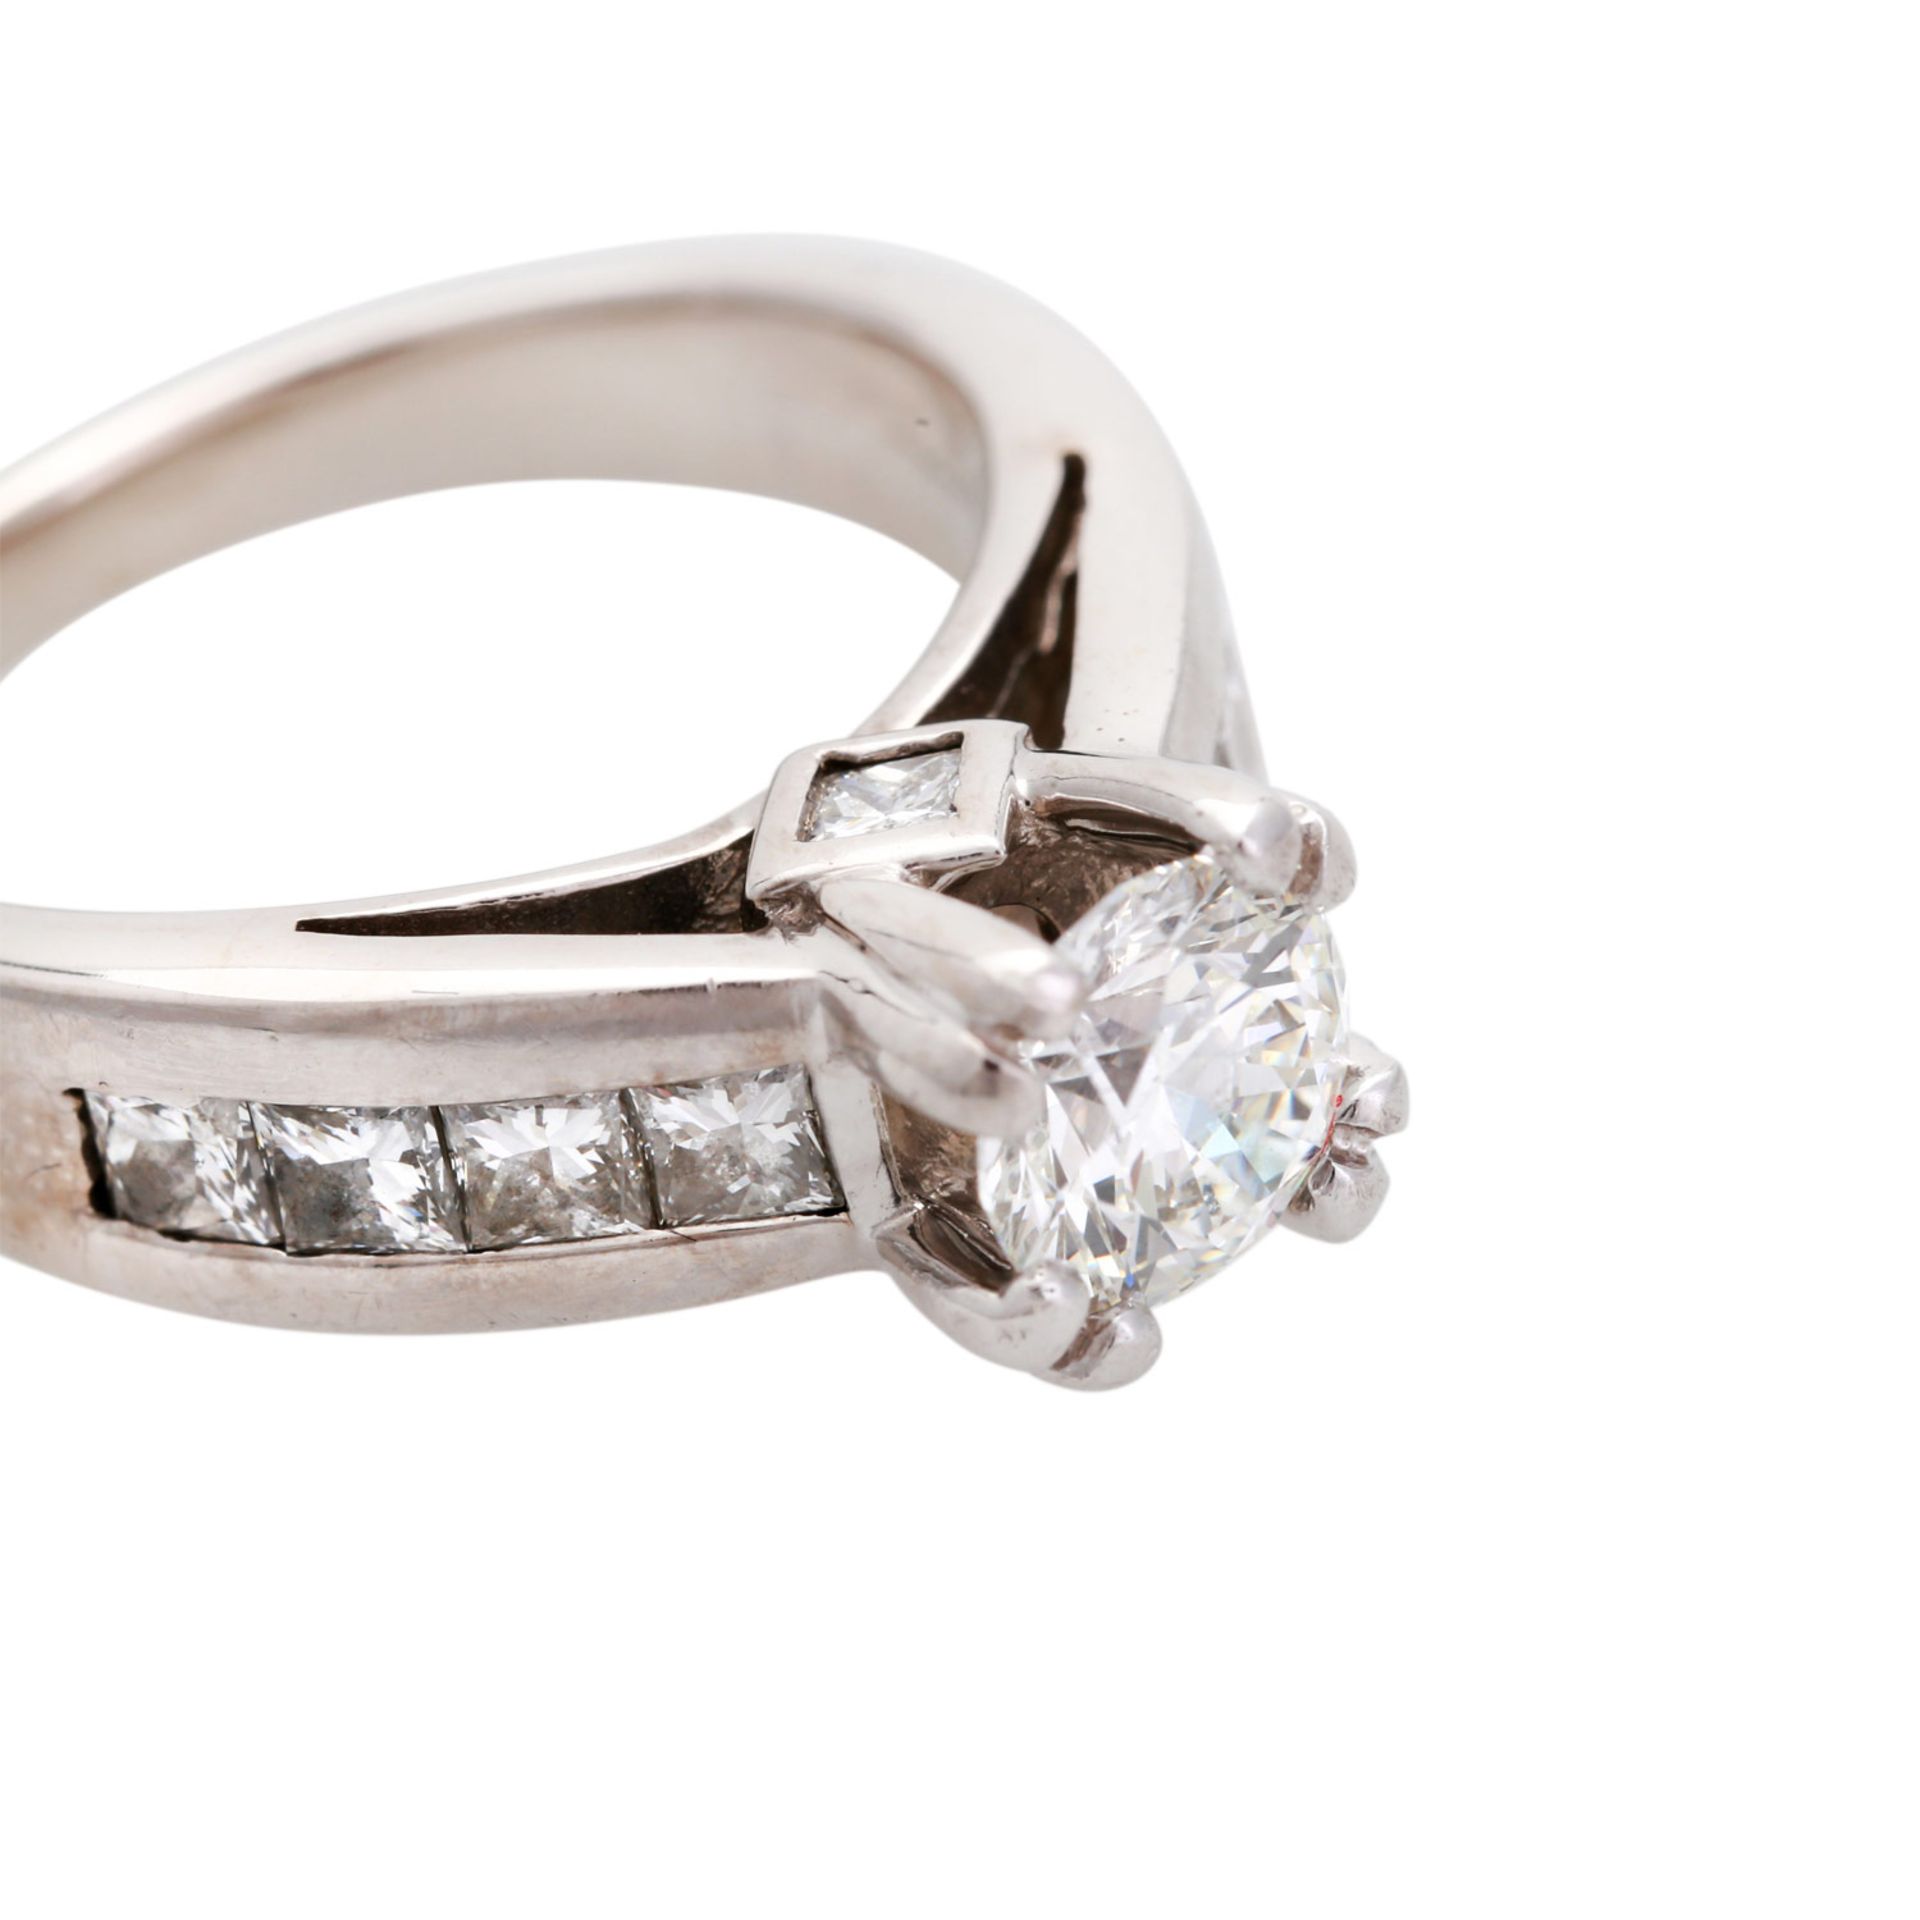 Damenring mit Diamanten, zentral ein Brillant von ca. 1 ct., SI2, WEIß (H), keine Fluoreszenz, - Bild 5 aus 6